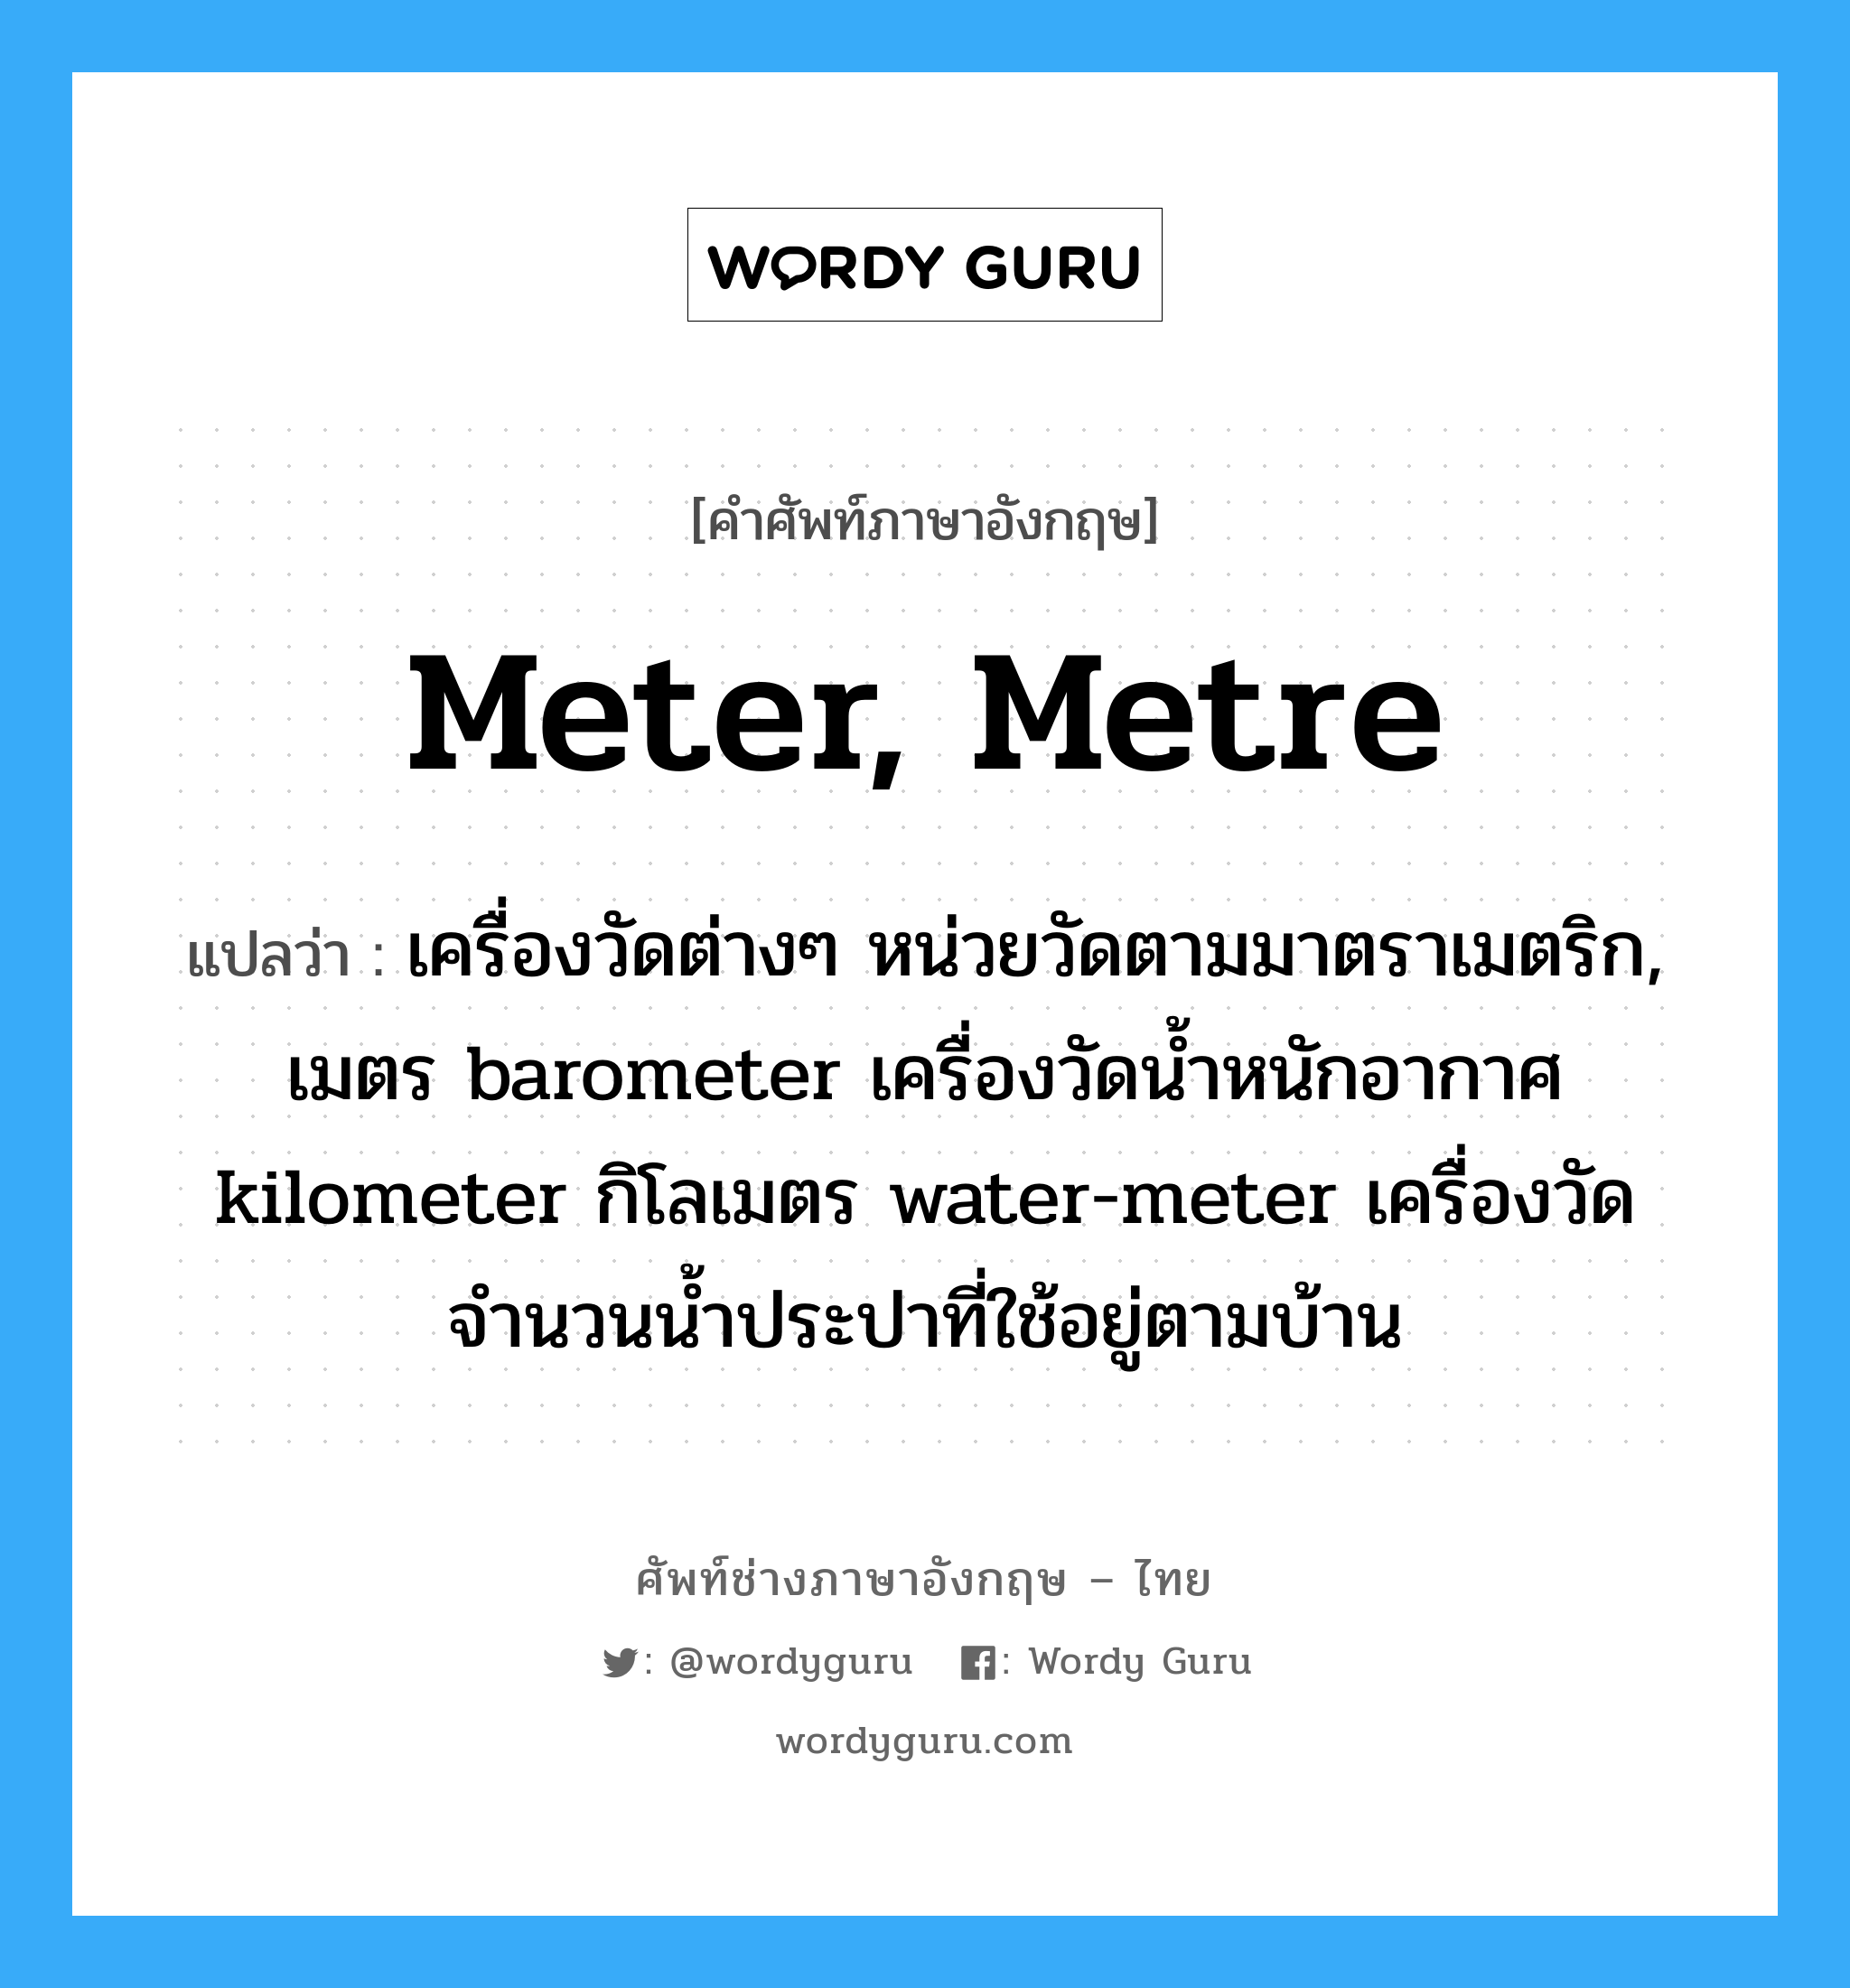 meter, metre แปลว่า?, คำศัพท์ช่างภาษาอังกฤษ - ไทย meter, metre คำศัพท์ภาษาอังกฤษ meter, metre แปลว่า เครื่องวัดต่างๆ หน่วยวัดตามมาตราเมตริก, เมตร barometer เครื่องวัดน้ำหนักอากาศ kilometer กิโลเมตร water-meter เครื่องวัดจำนวนน้ำประปาที่ใช้อยู่ตามบ้าน